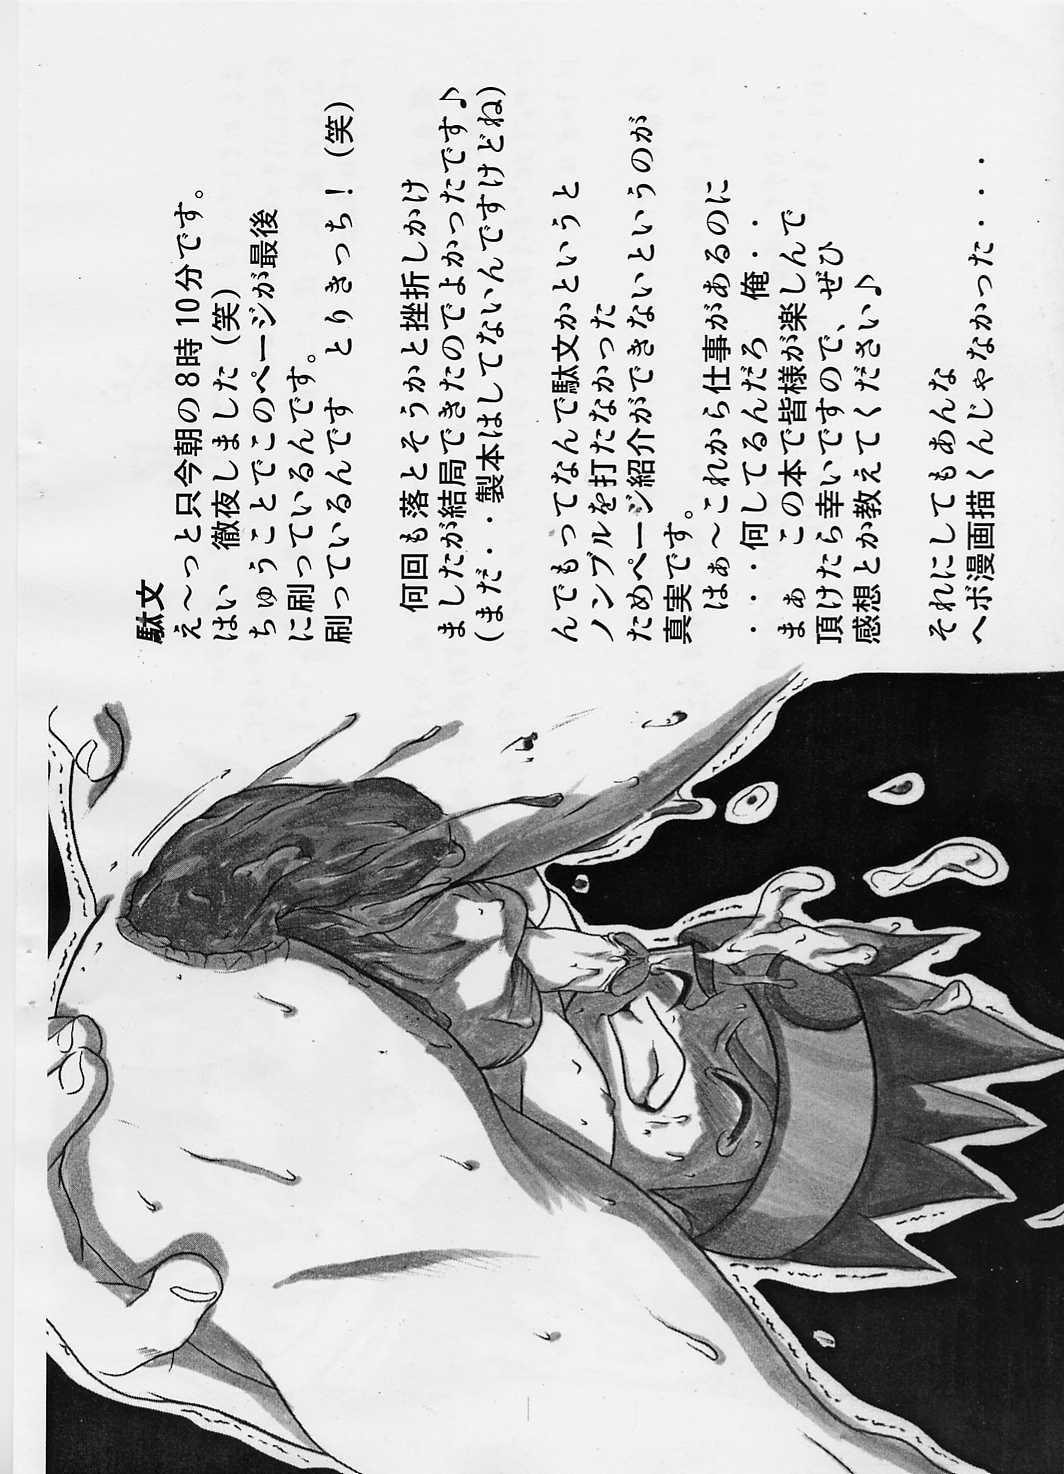 Moms Shotakatsu VOL 1 - Naruto Hunter x hunter Bakusou kyoudai lets and go Rurouni kenshin | samurai x Oil - Page 3